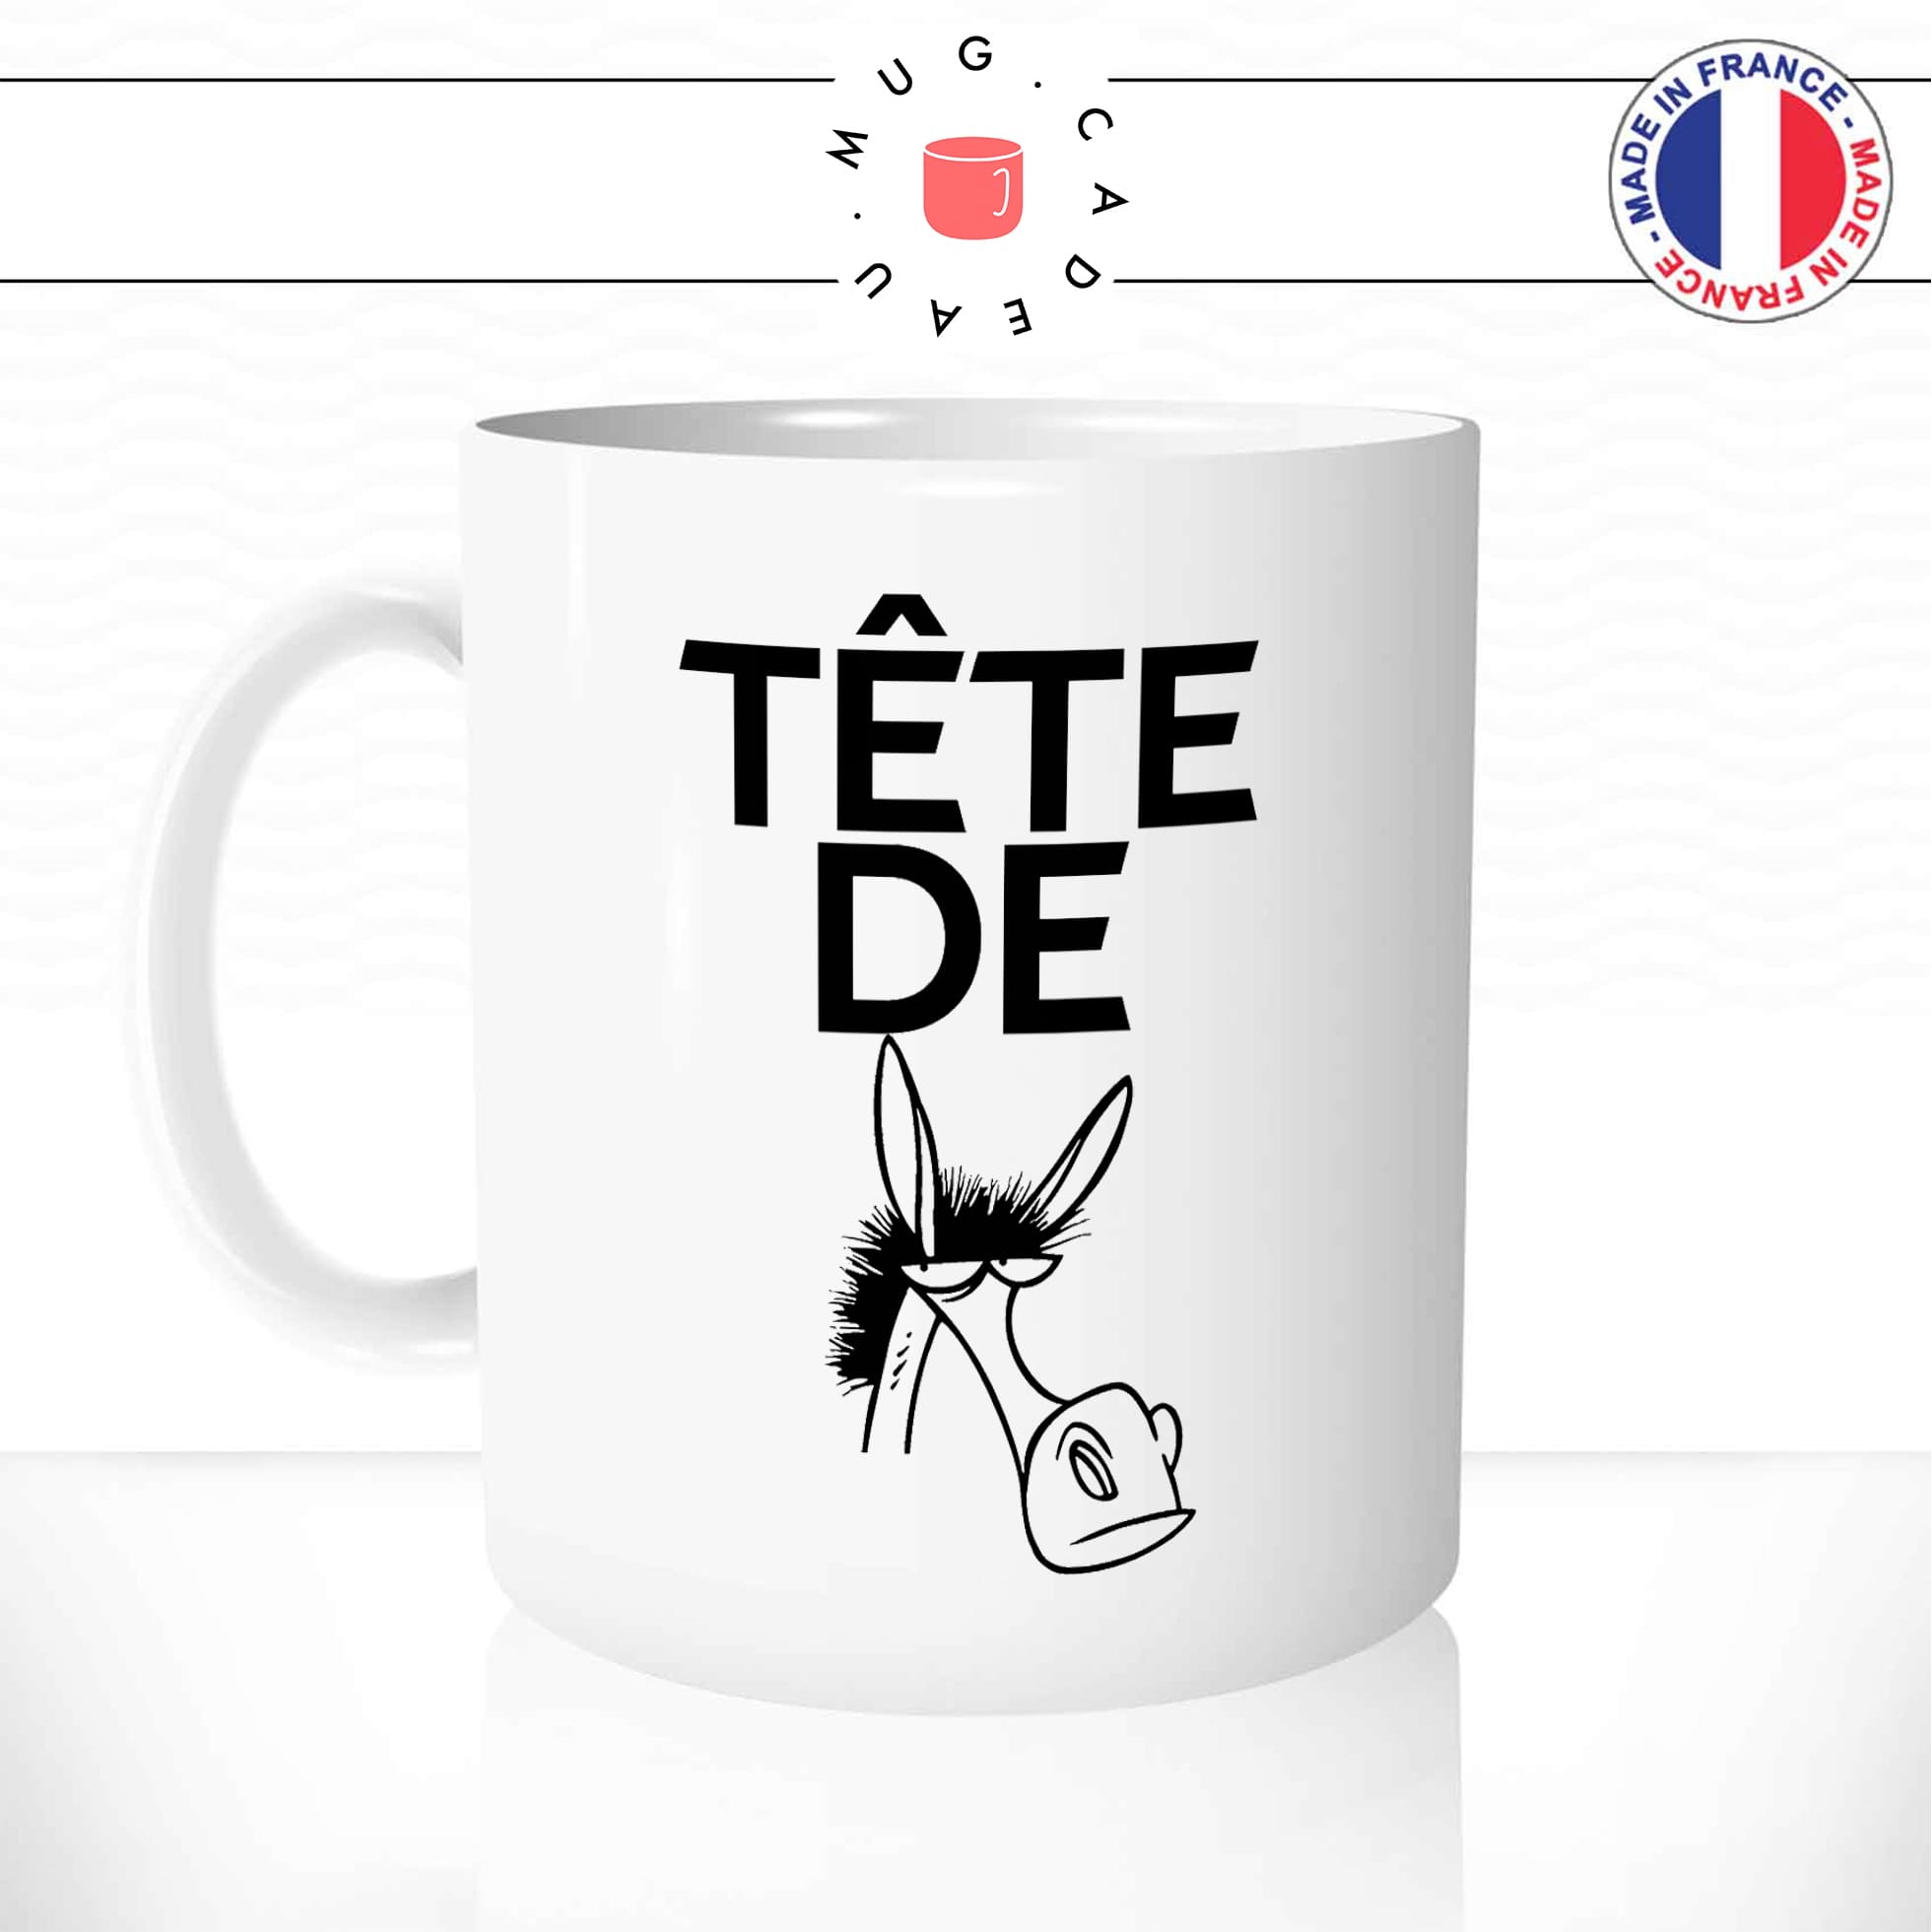 mug-tasse-blanc-tete-de-mule-drole-expression-francaise-borné-homme-femme-humour-fun-idée-cadeau-originale-cool